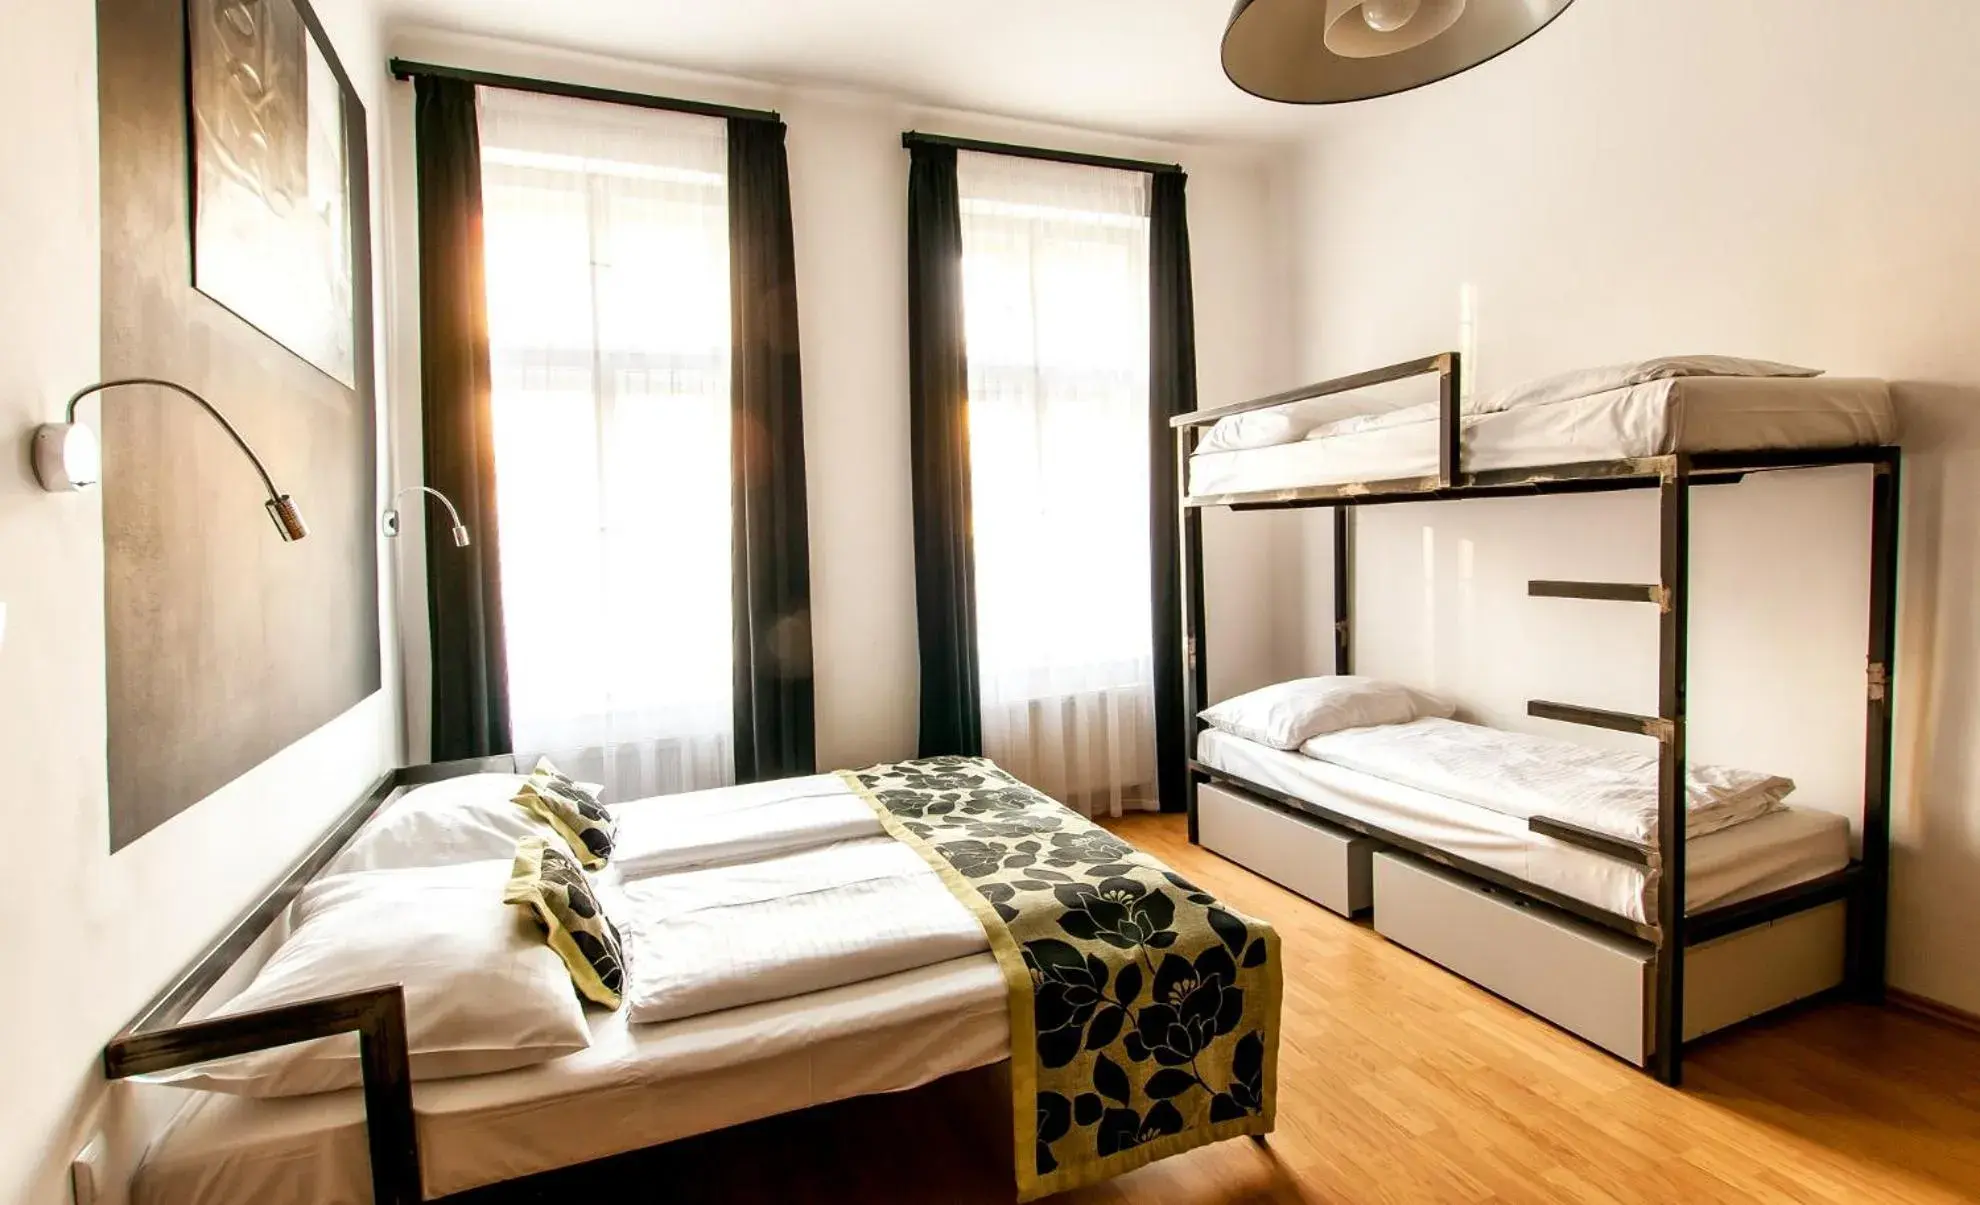 Bed in Czech Inn Hostel